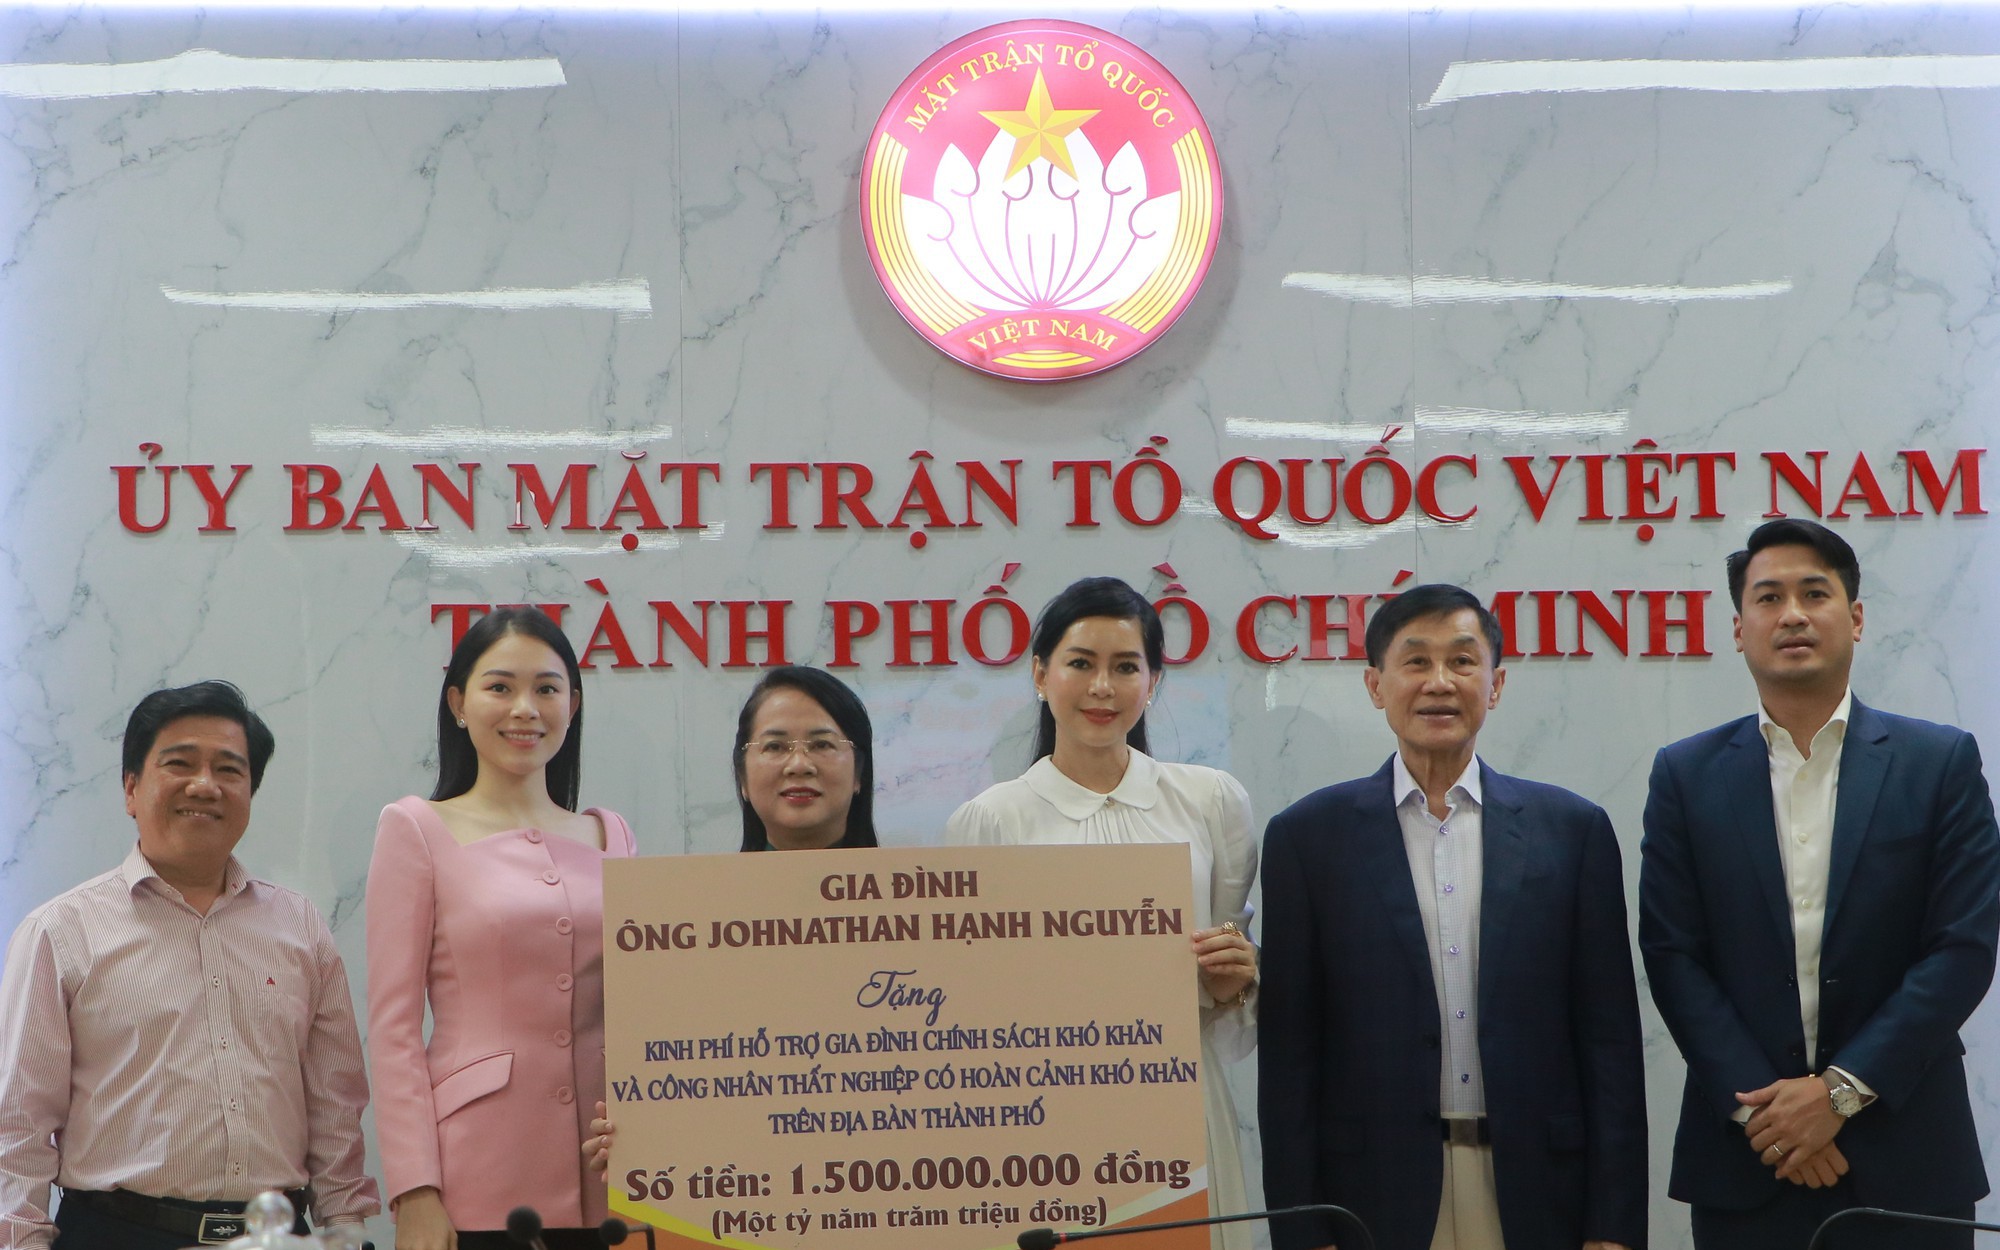 Hoãn đám cưới tại Việt Nam, con trai ông Johnathan Hạnh Nguyễn ủng hộ 1,5 tỷ đồng cho công nhân khó khăn, thất nghiệp